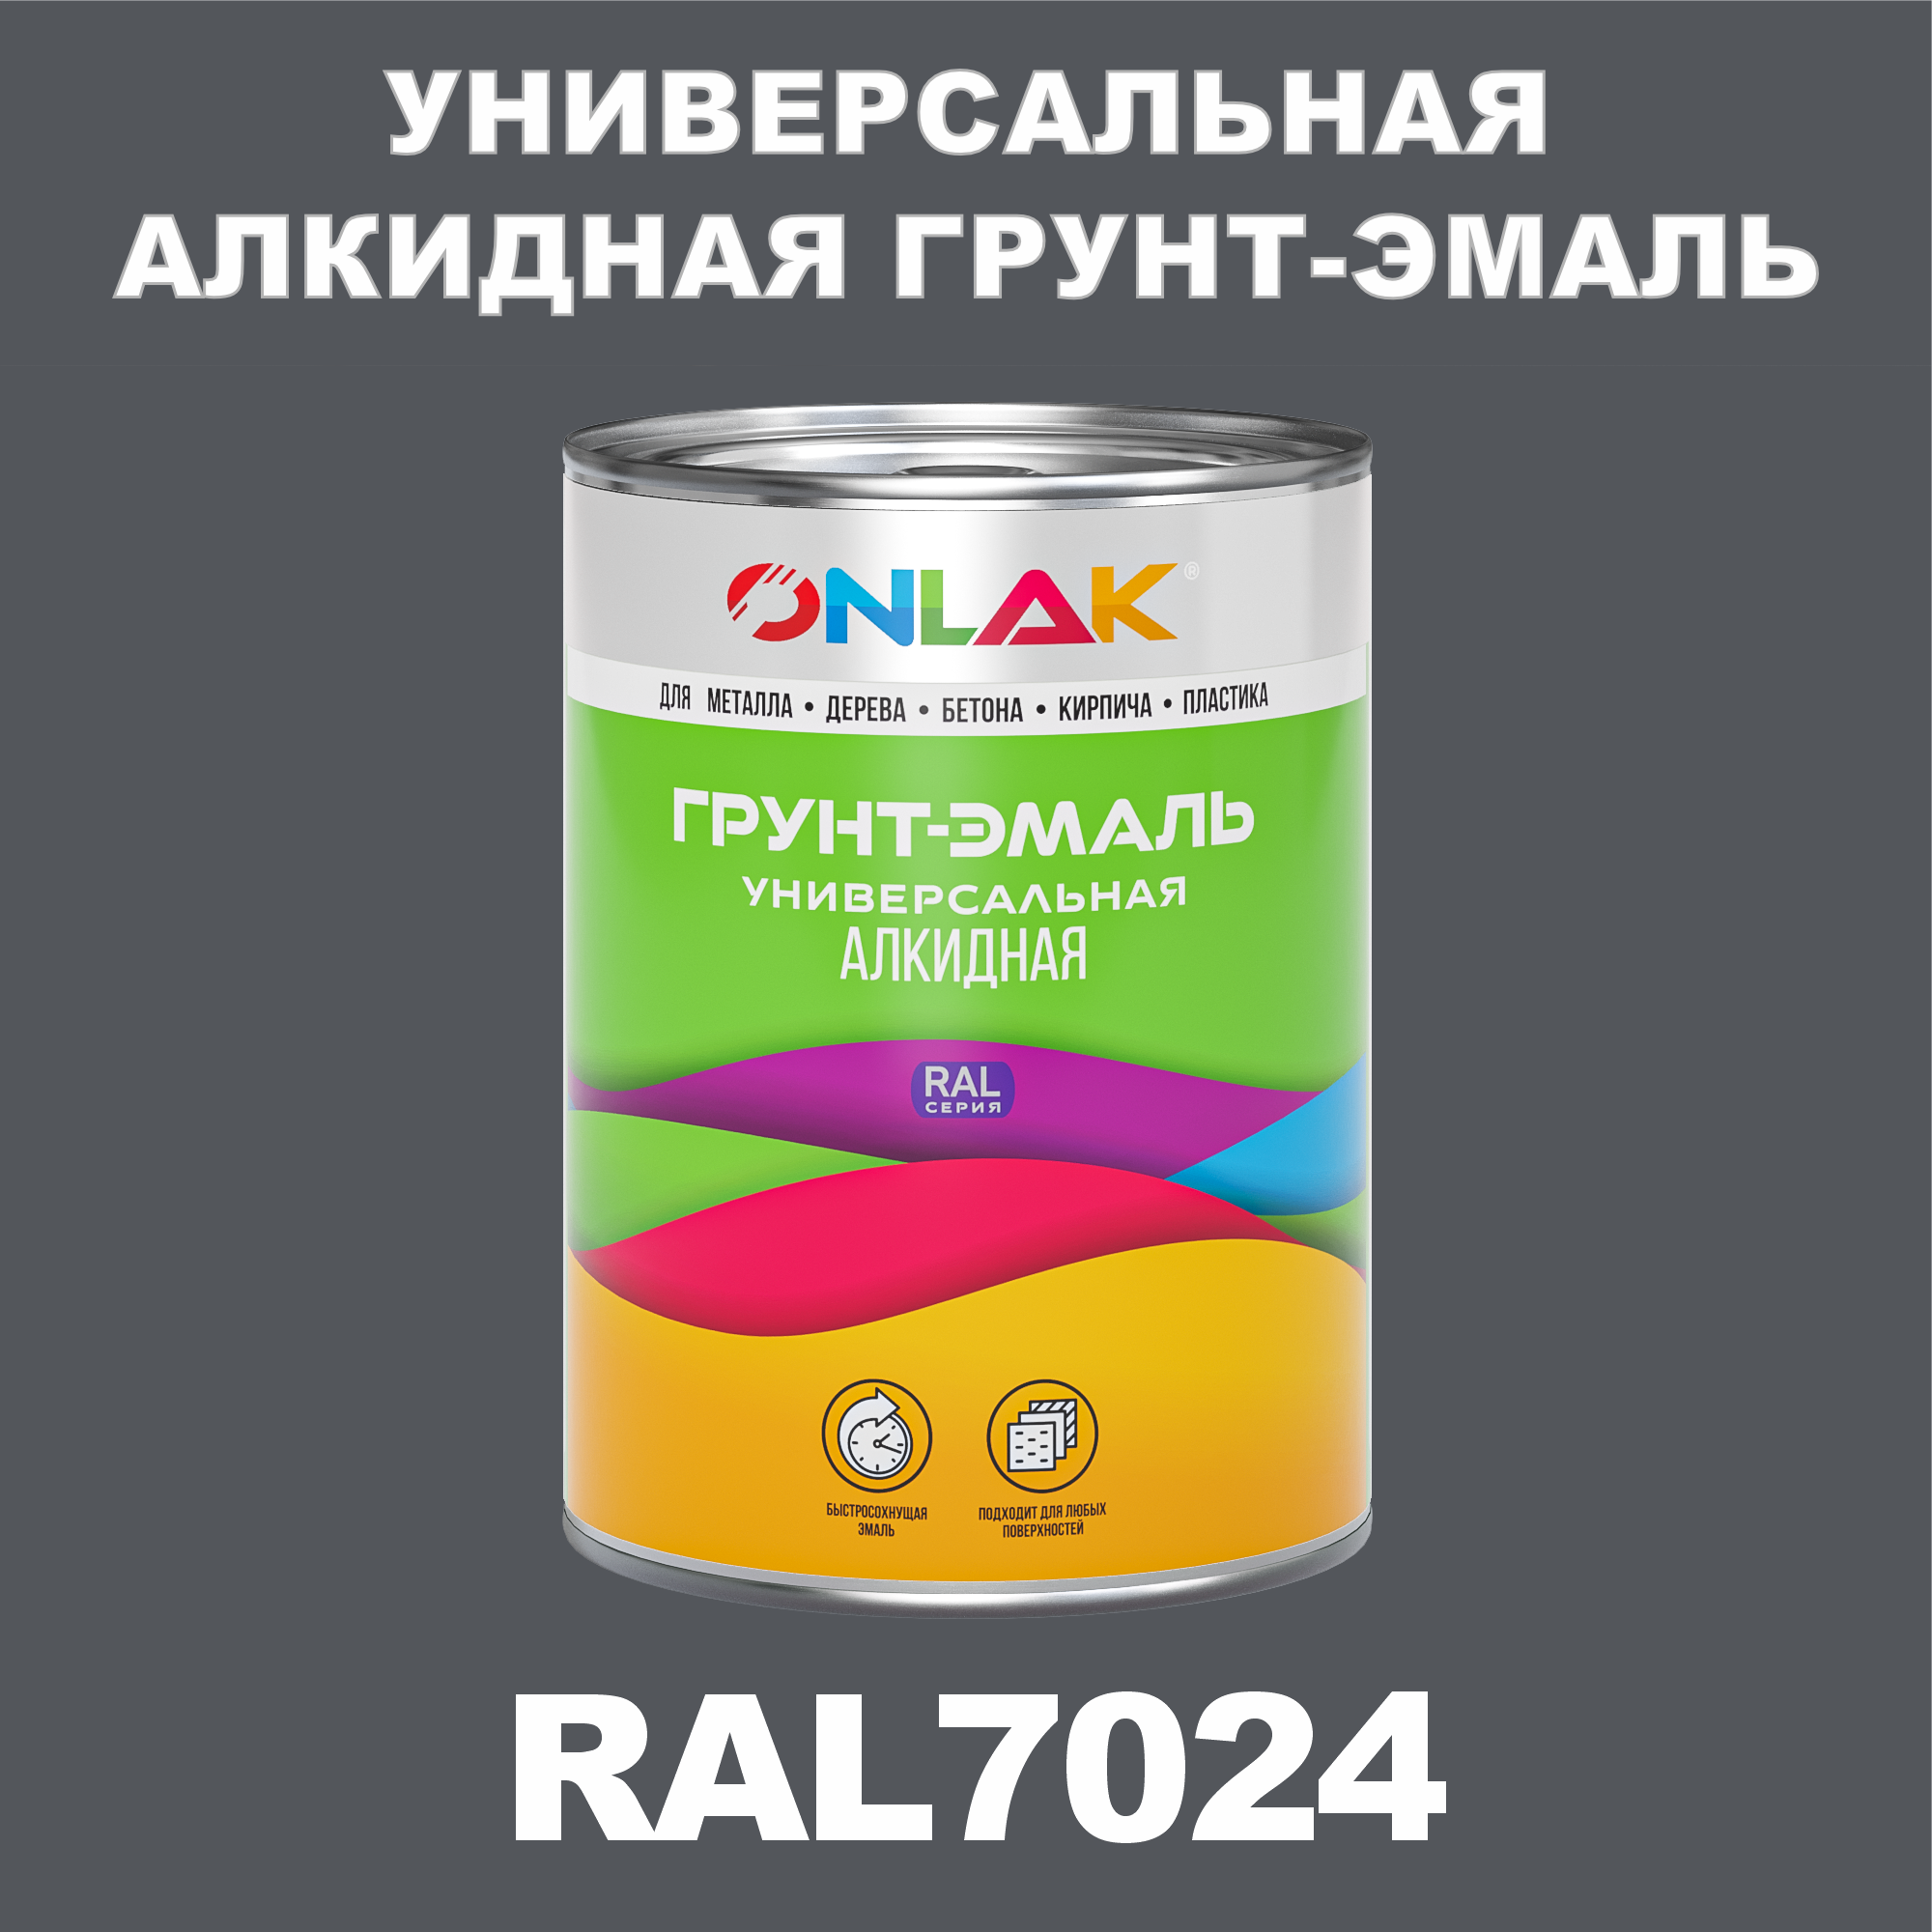 Грунт-эмаль ONLAK 1К RAL7024 антикоррозионная алкидная по металлу по ржавчине 1 кг грунт для масла mighty oak